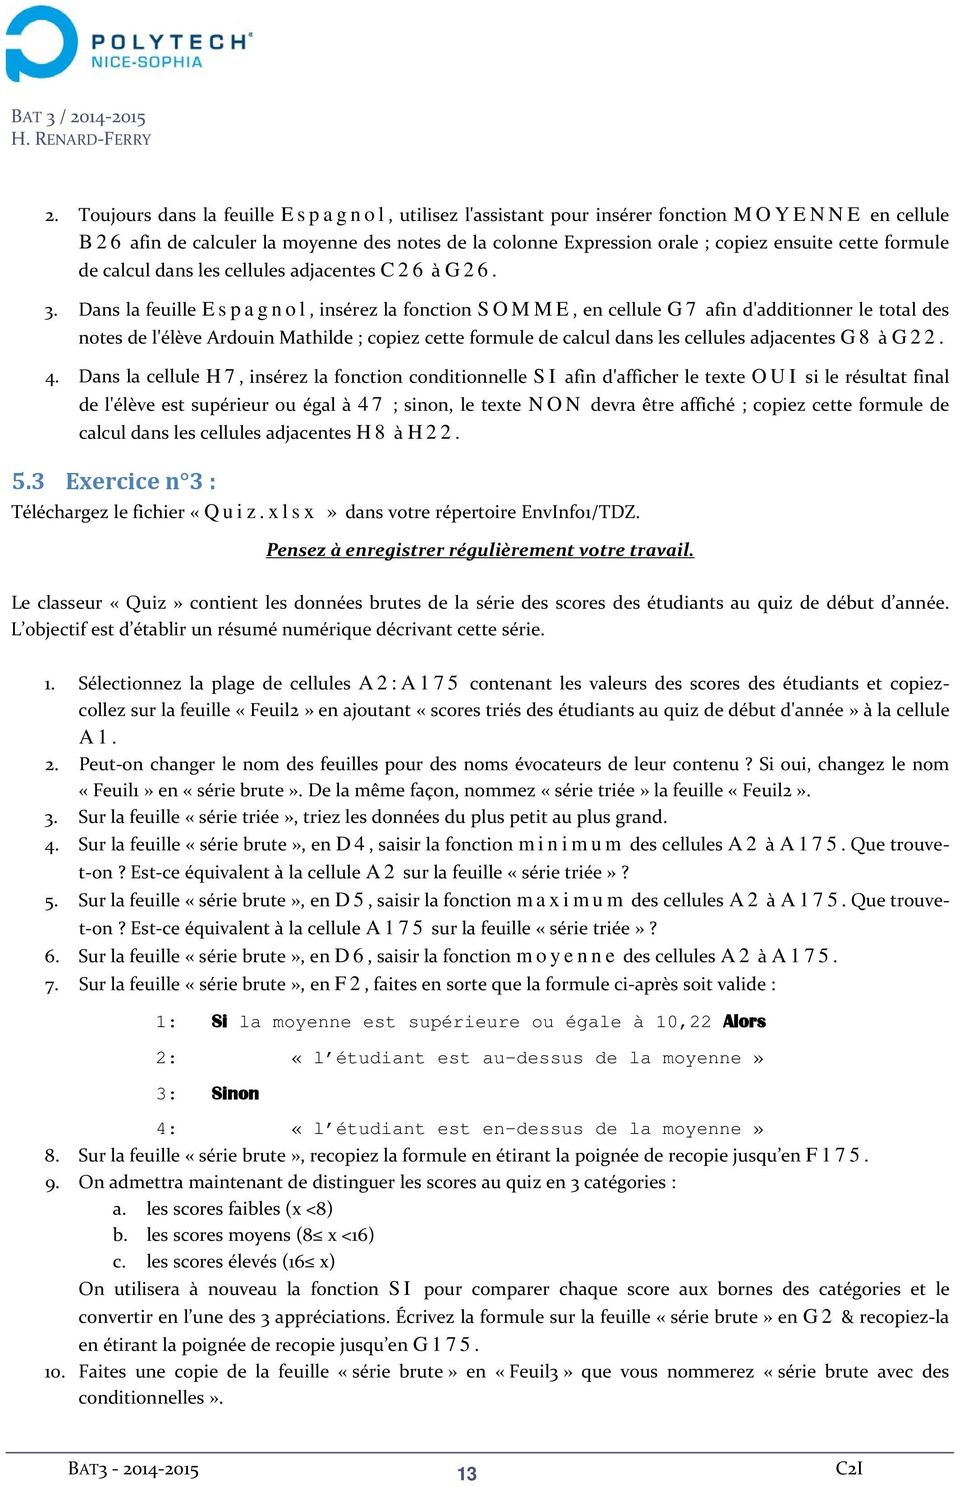 Dans la feuille Espagnol, insérez la fonction SOMME, en cellule G7 afin d'additionner le total des notes de l'élève Ardouin Mathilde ; copiez cette formule de calcul dans les cellules adjacentes G8 à